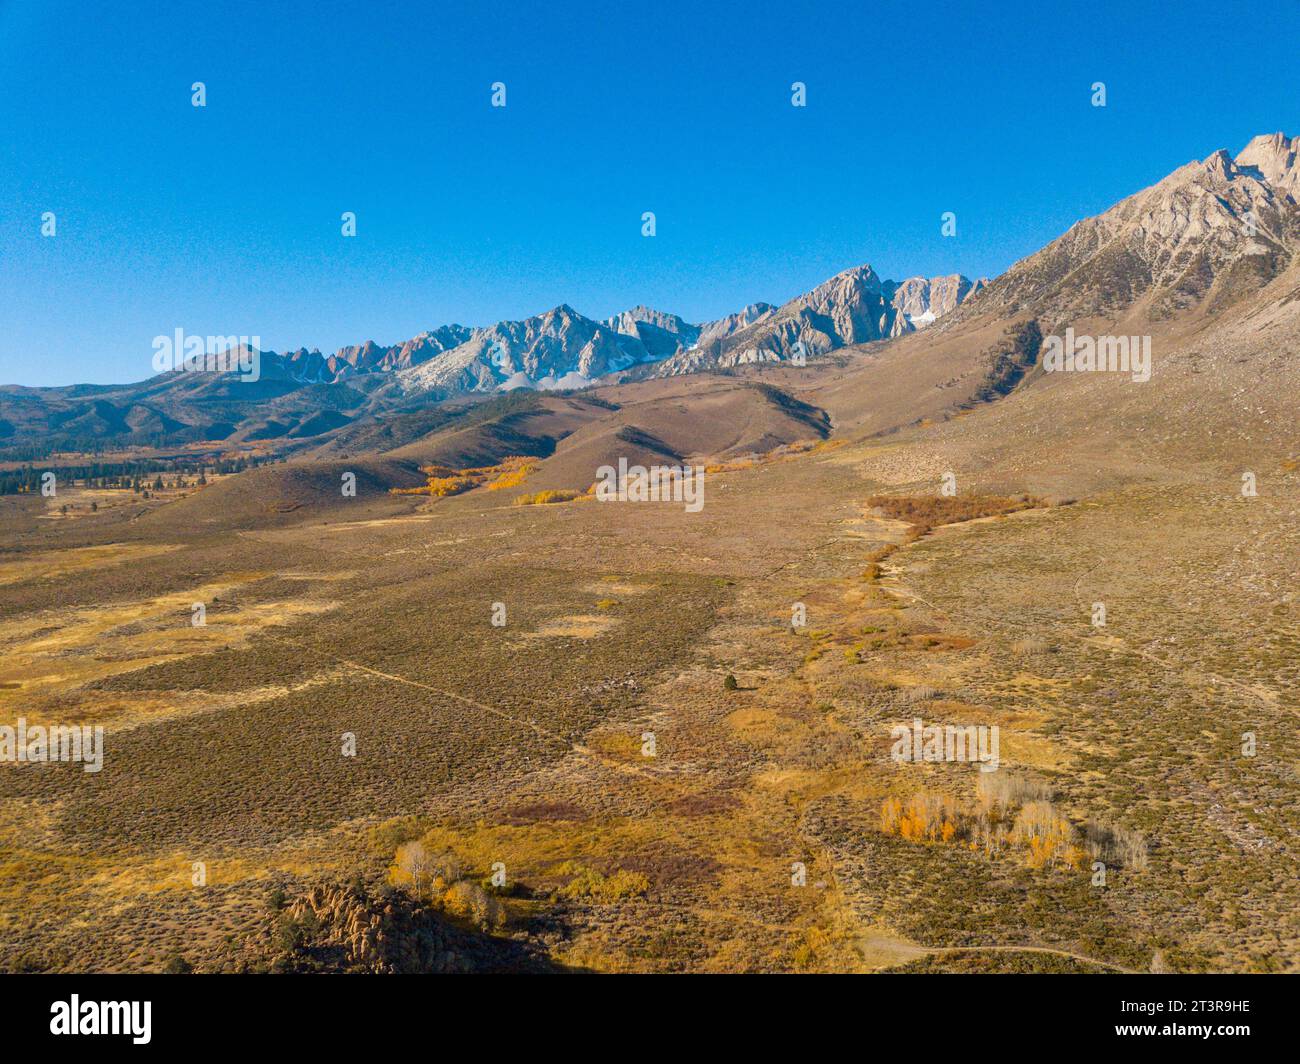 Vistas aéreas de las montañas del este de Sierra Nevada tomadas con dron durante el otoño. cielo azul y follaje amarillo de otoño. Foto de stock